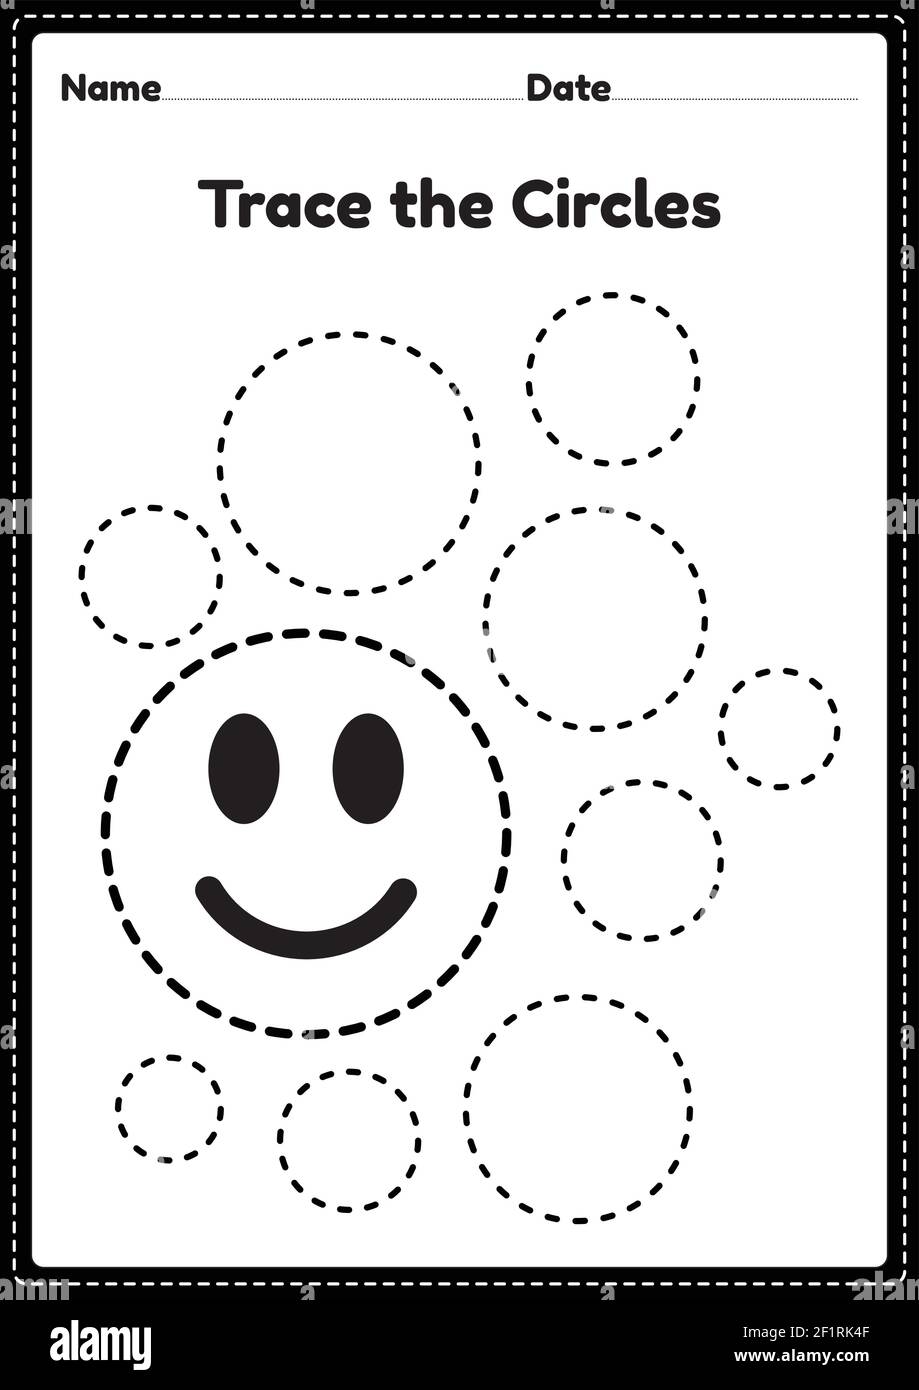 printable-circle-worksheets-preschool-learning-preschool-c54